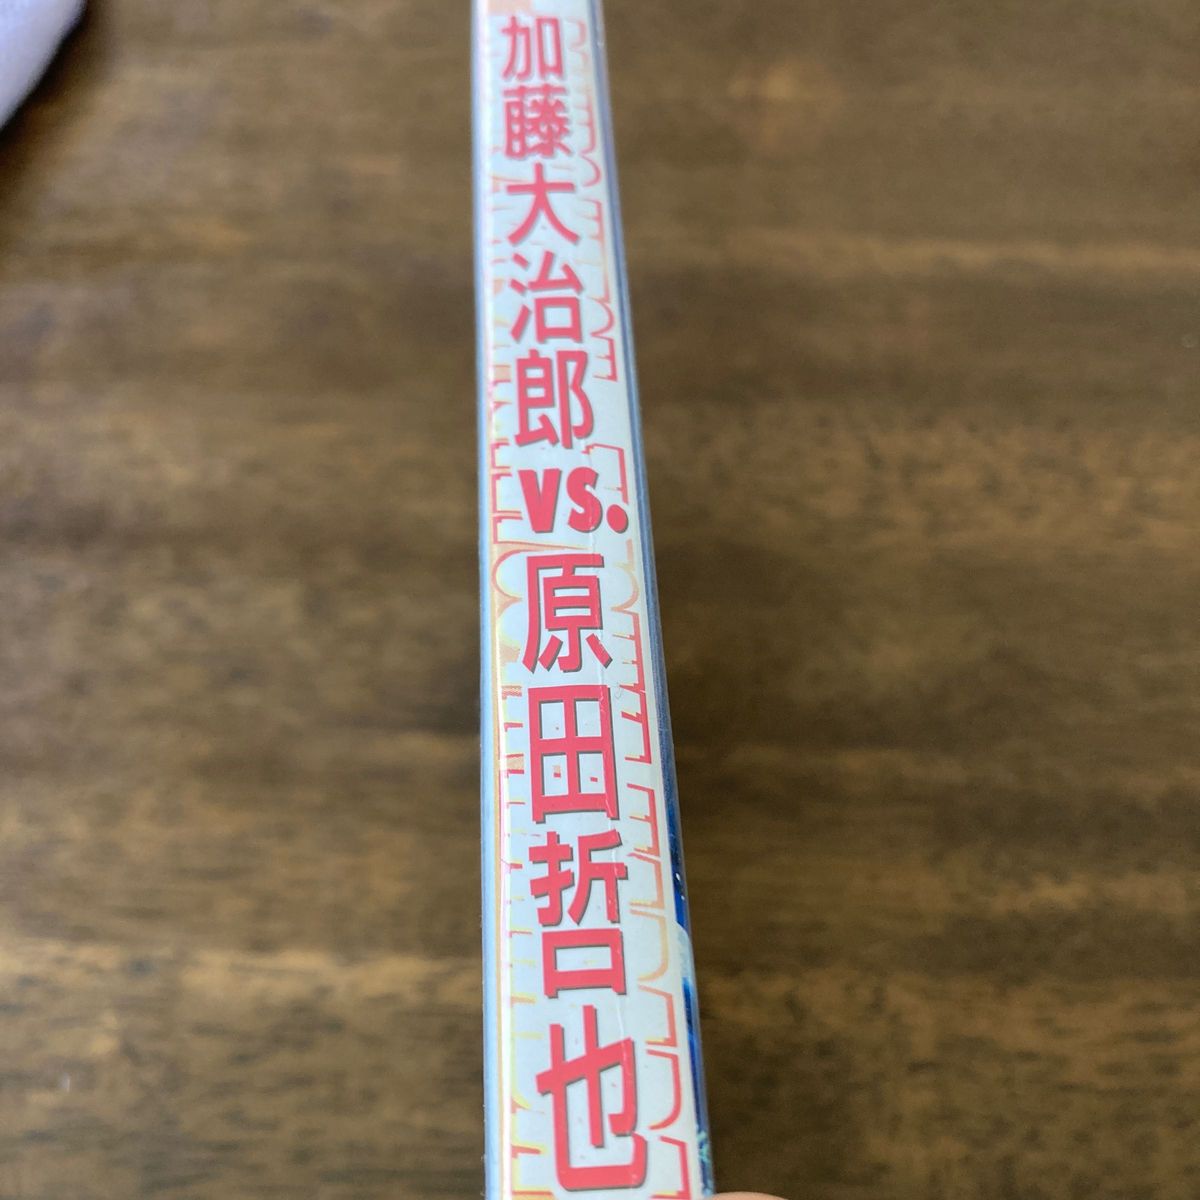 加藤大治郎vs原田哲也　motogp 2001 special DVD 公式DVD 二人の天才による激闘！